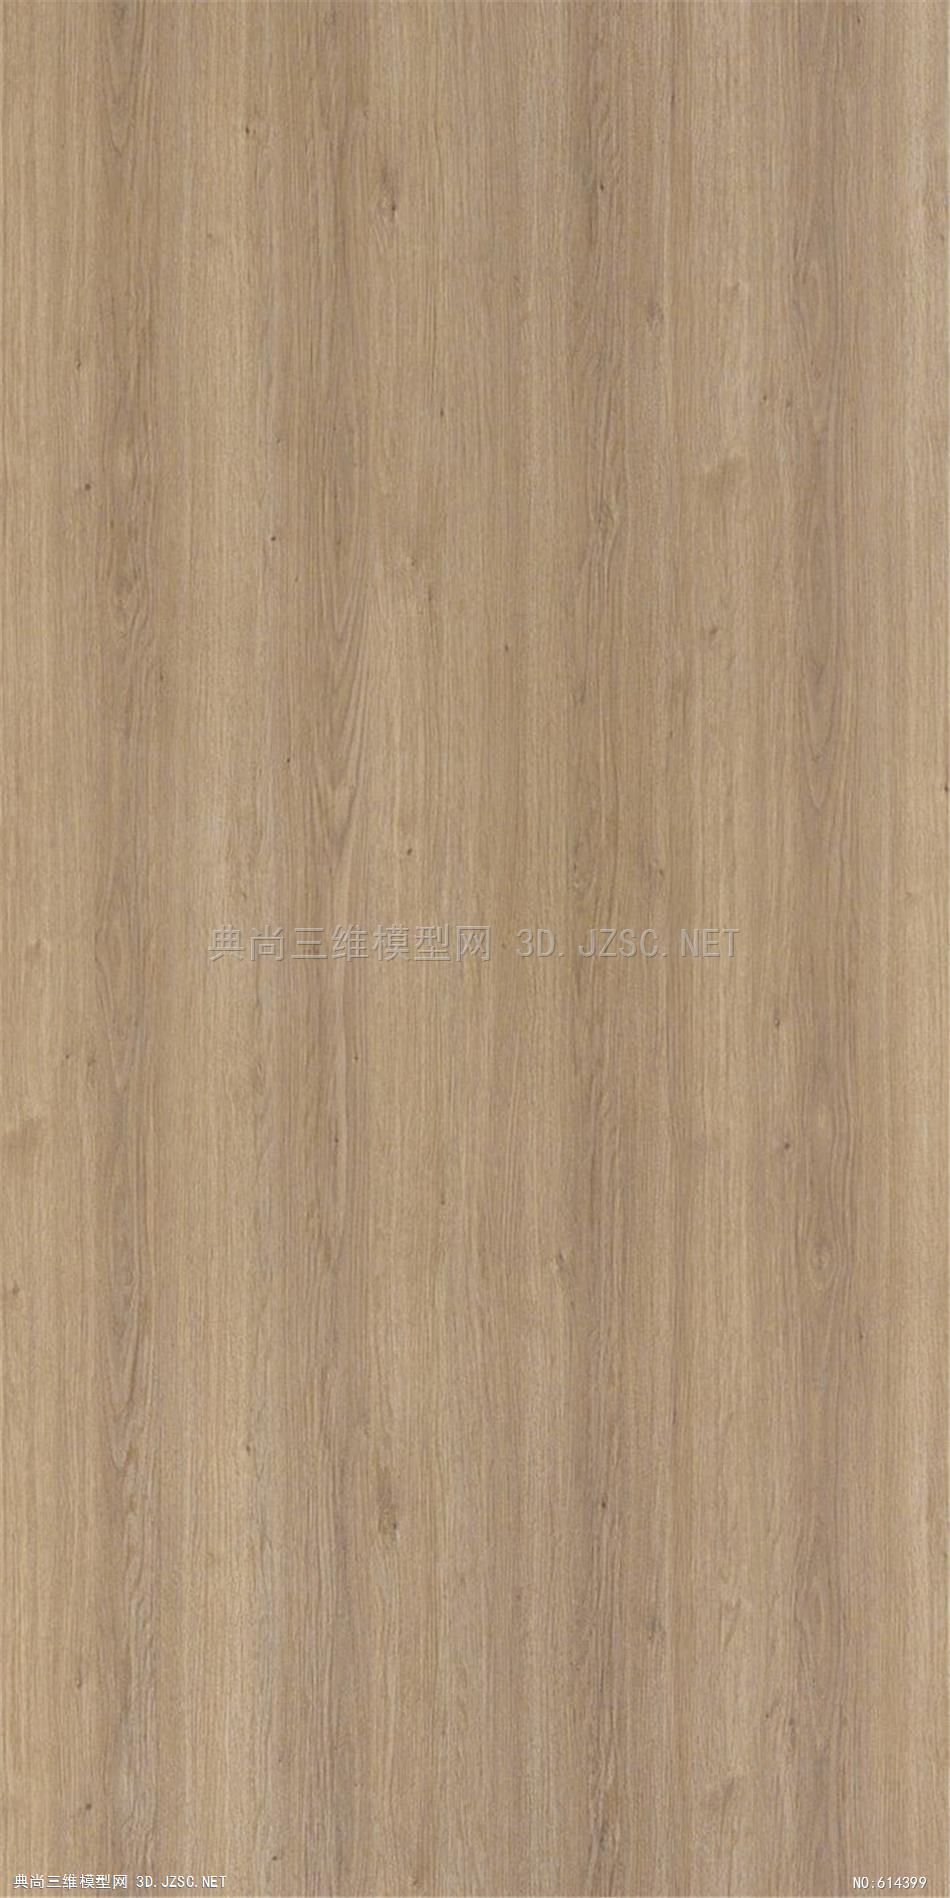 木饰面 木纹 木材  高清材质贴图 (286)